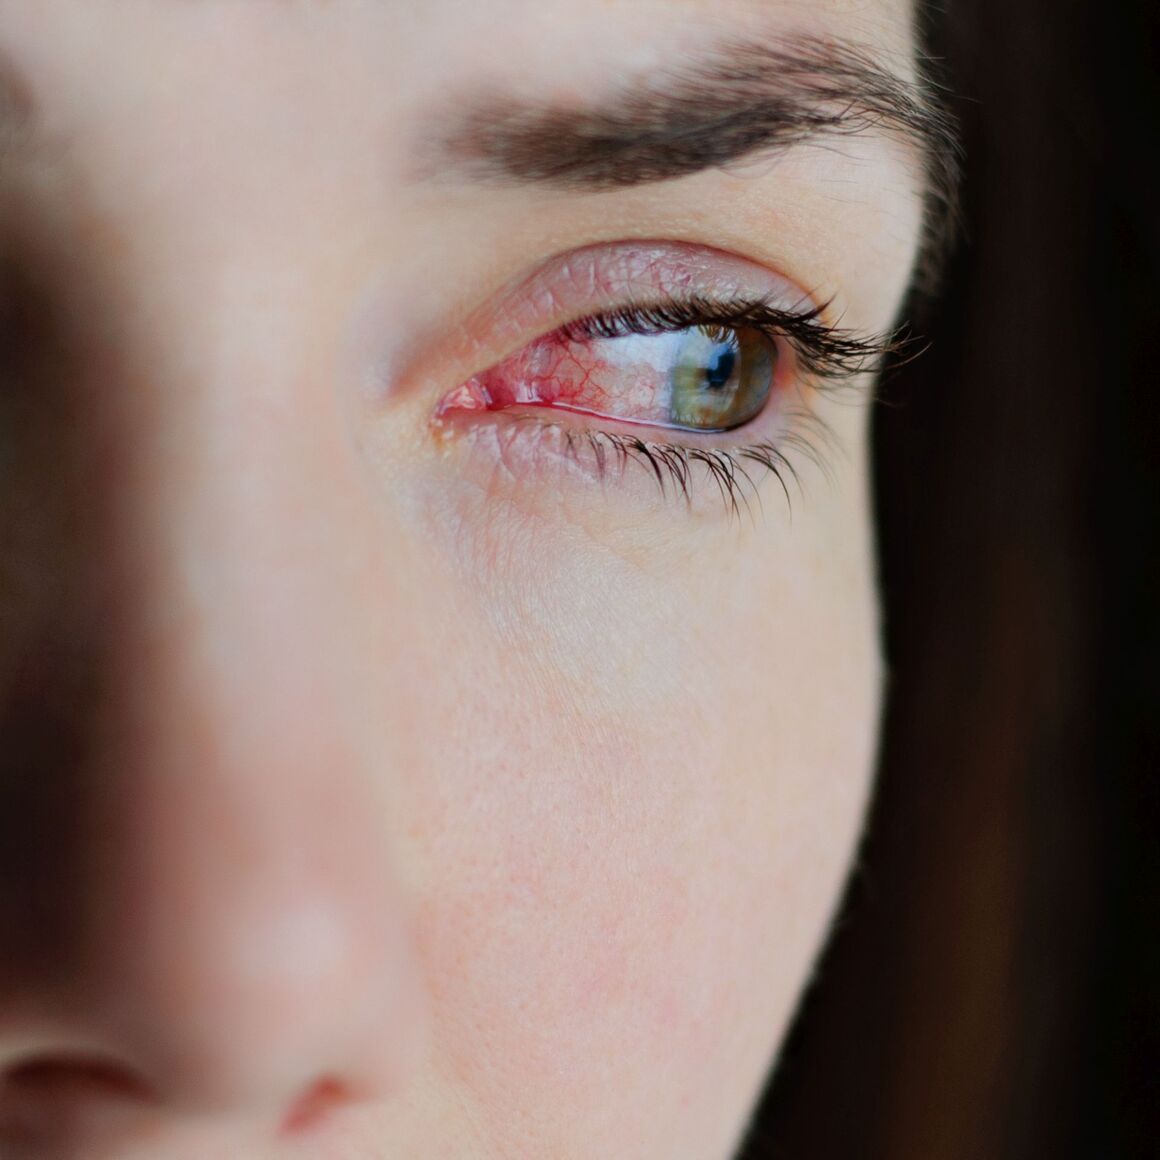 Nahaufnahme von gereizten oder infizierten roten, blutunterlaufenen Augen